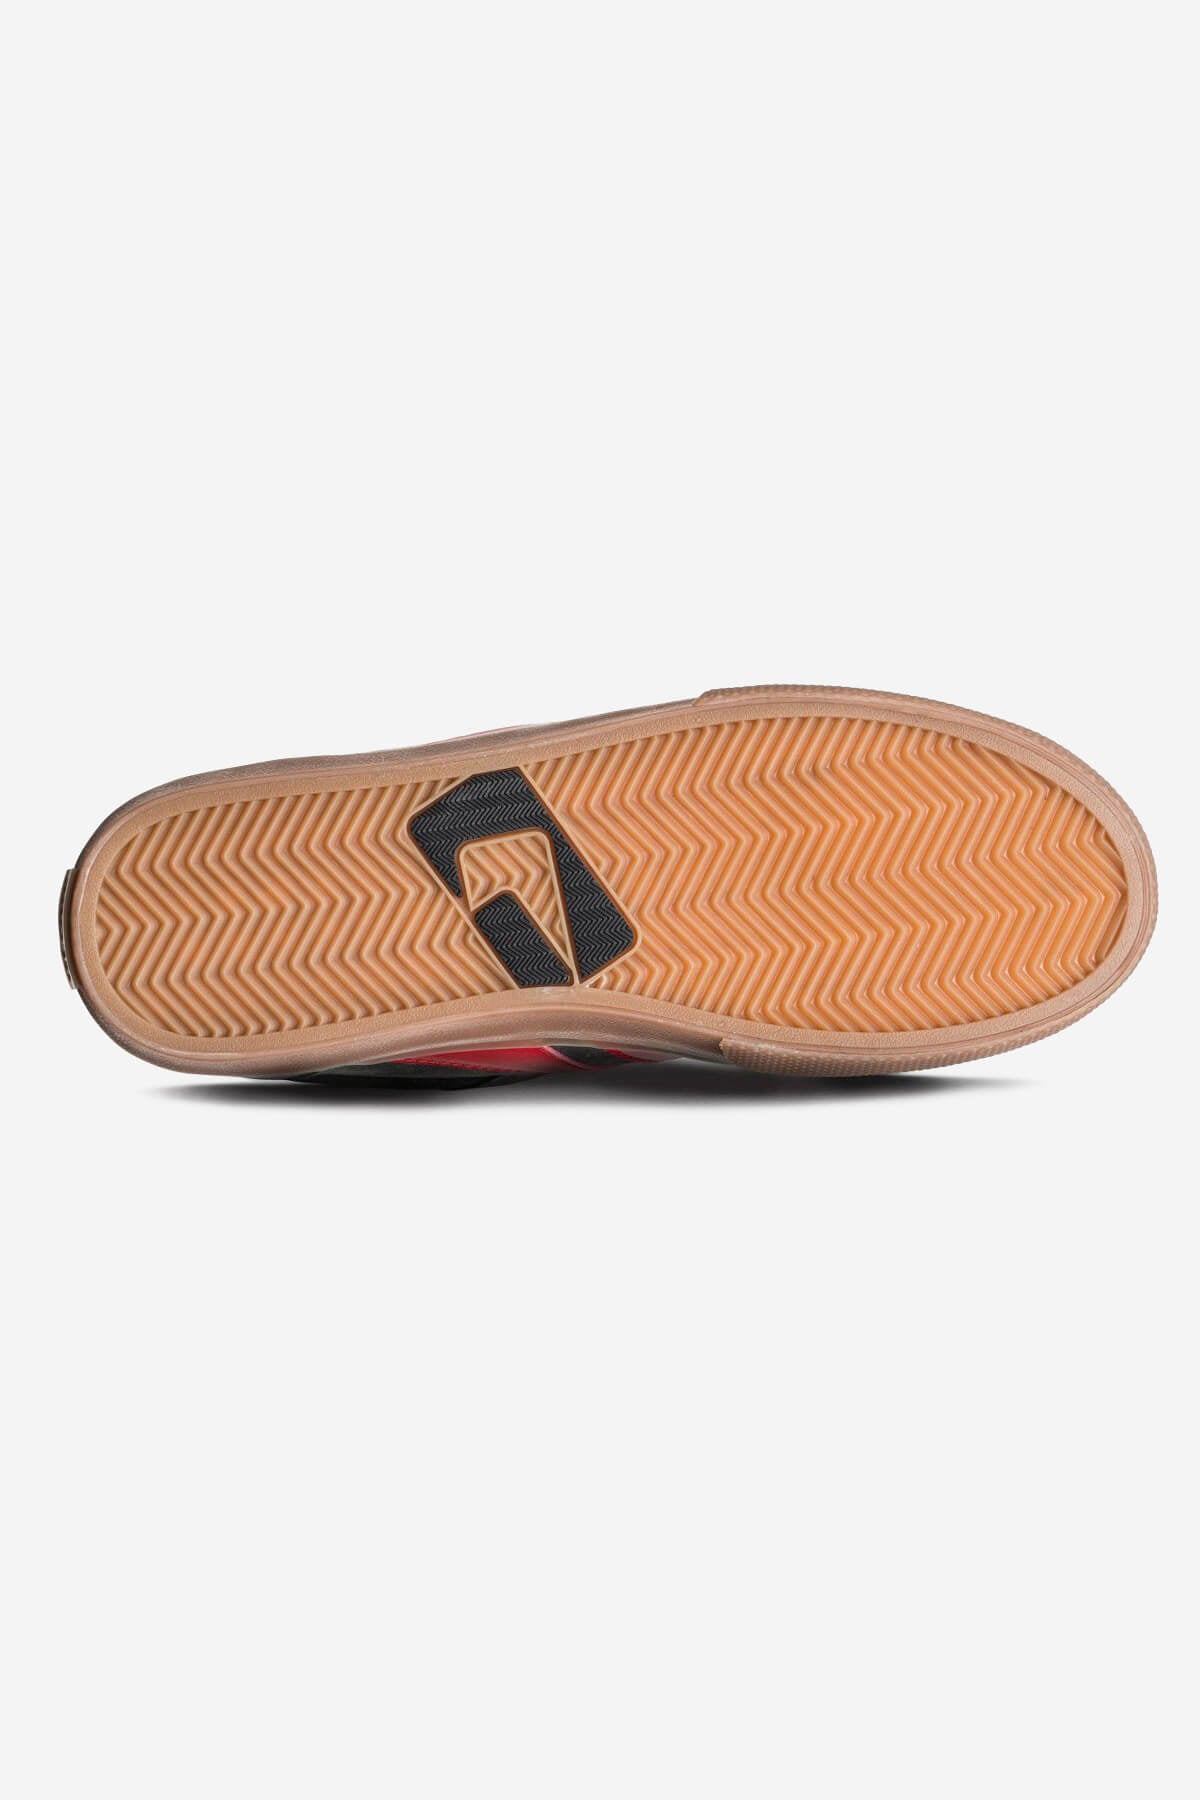 encore-2 charcoal gum red skateboard  schoenen